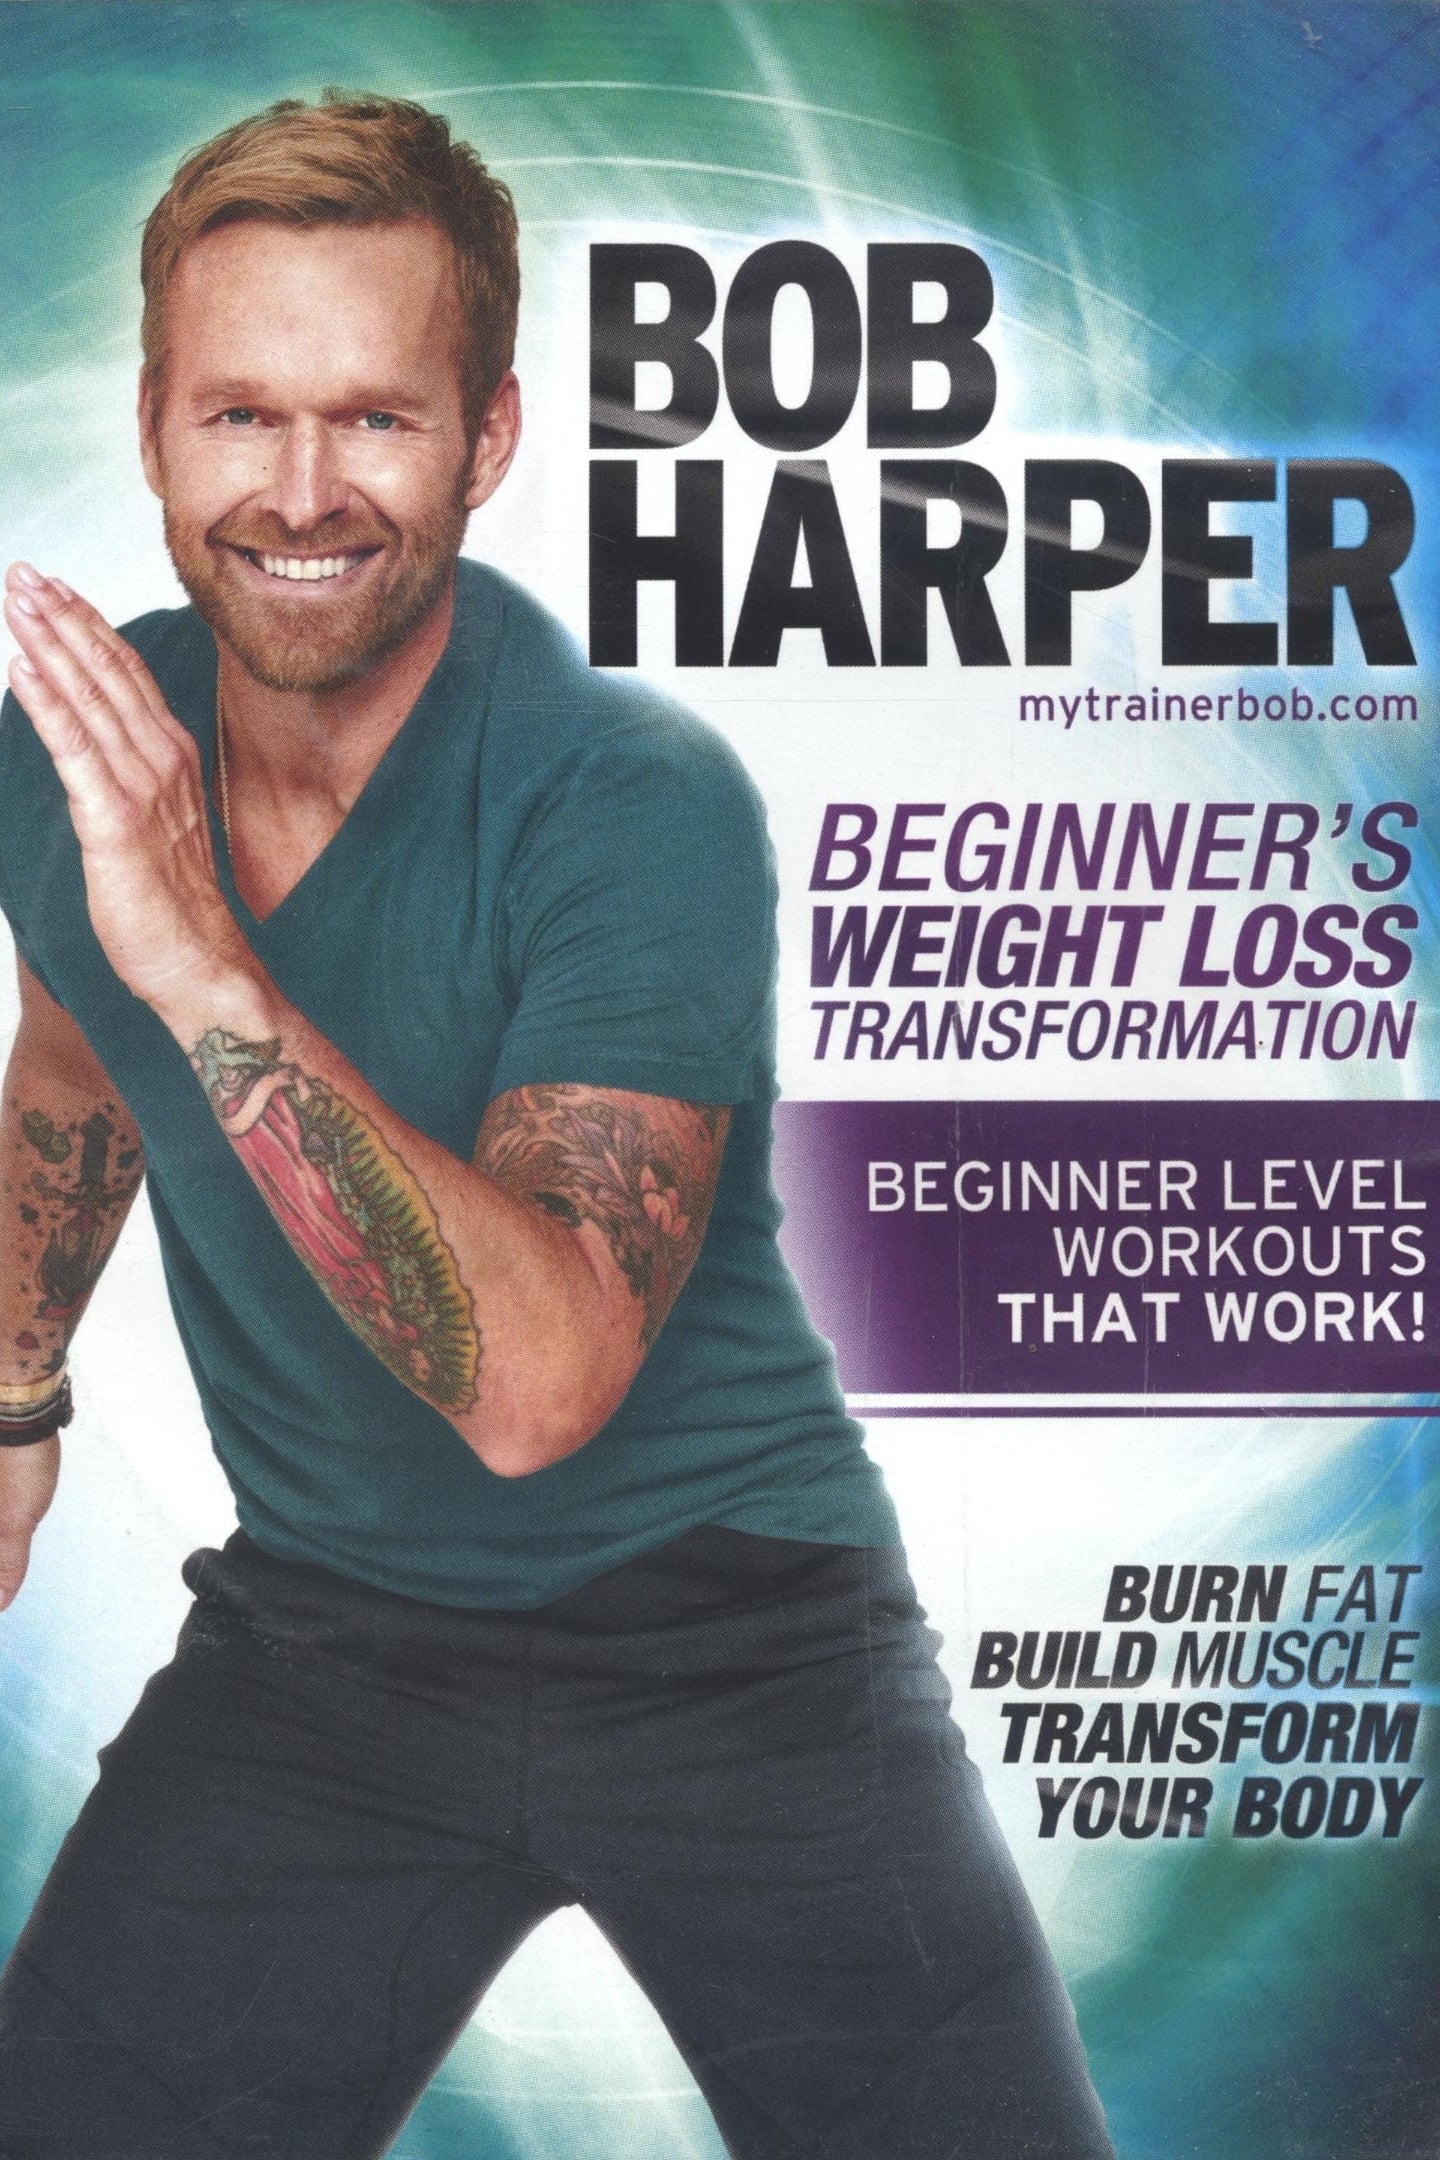 Bob Harper: Beginner's Weight Loss Transformation - 2 10-Minute Beginner Abs